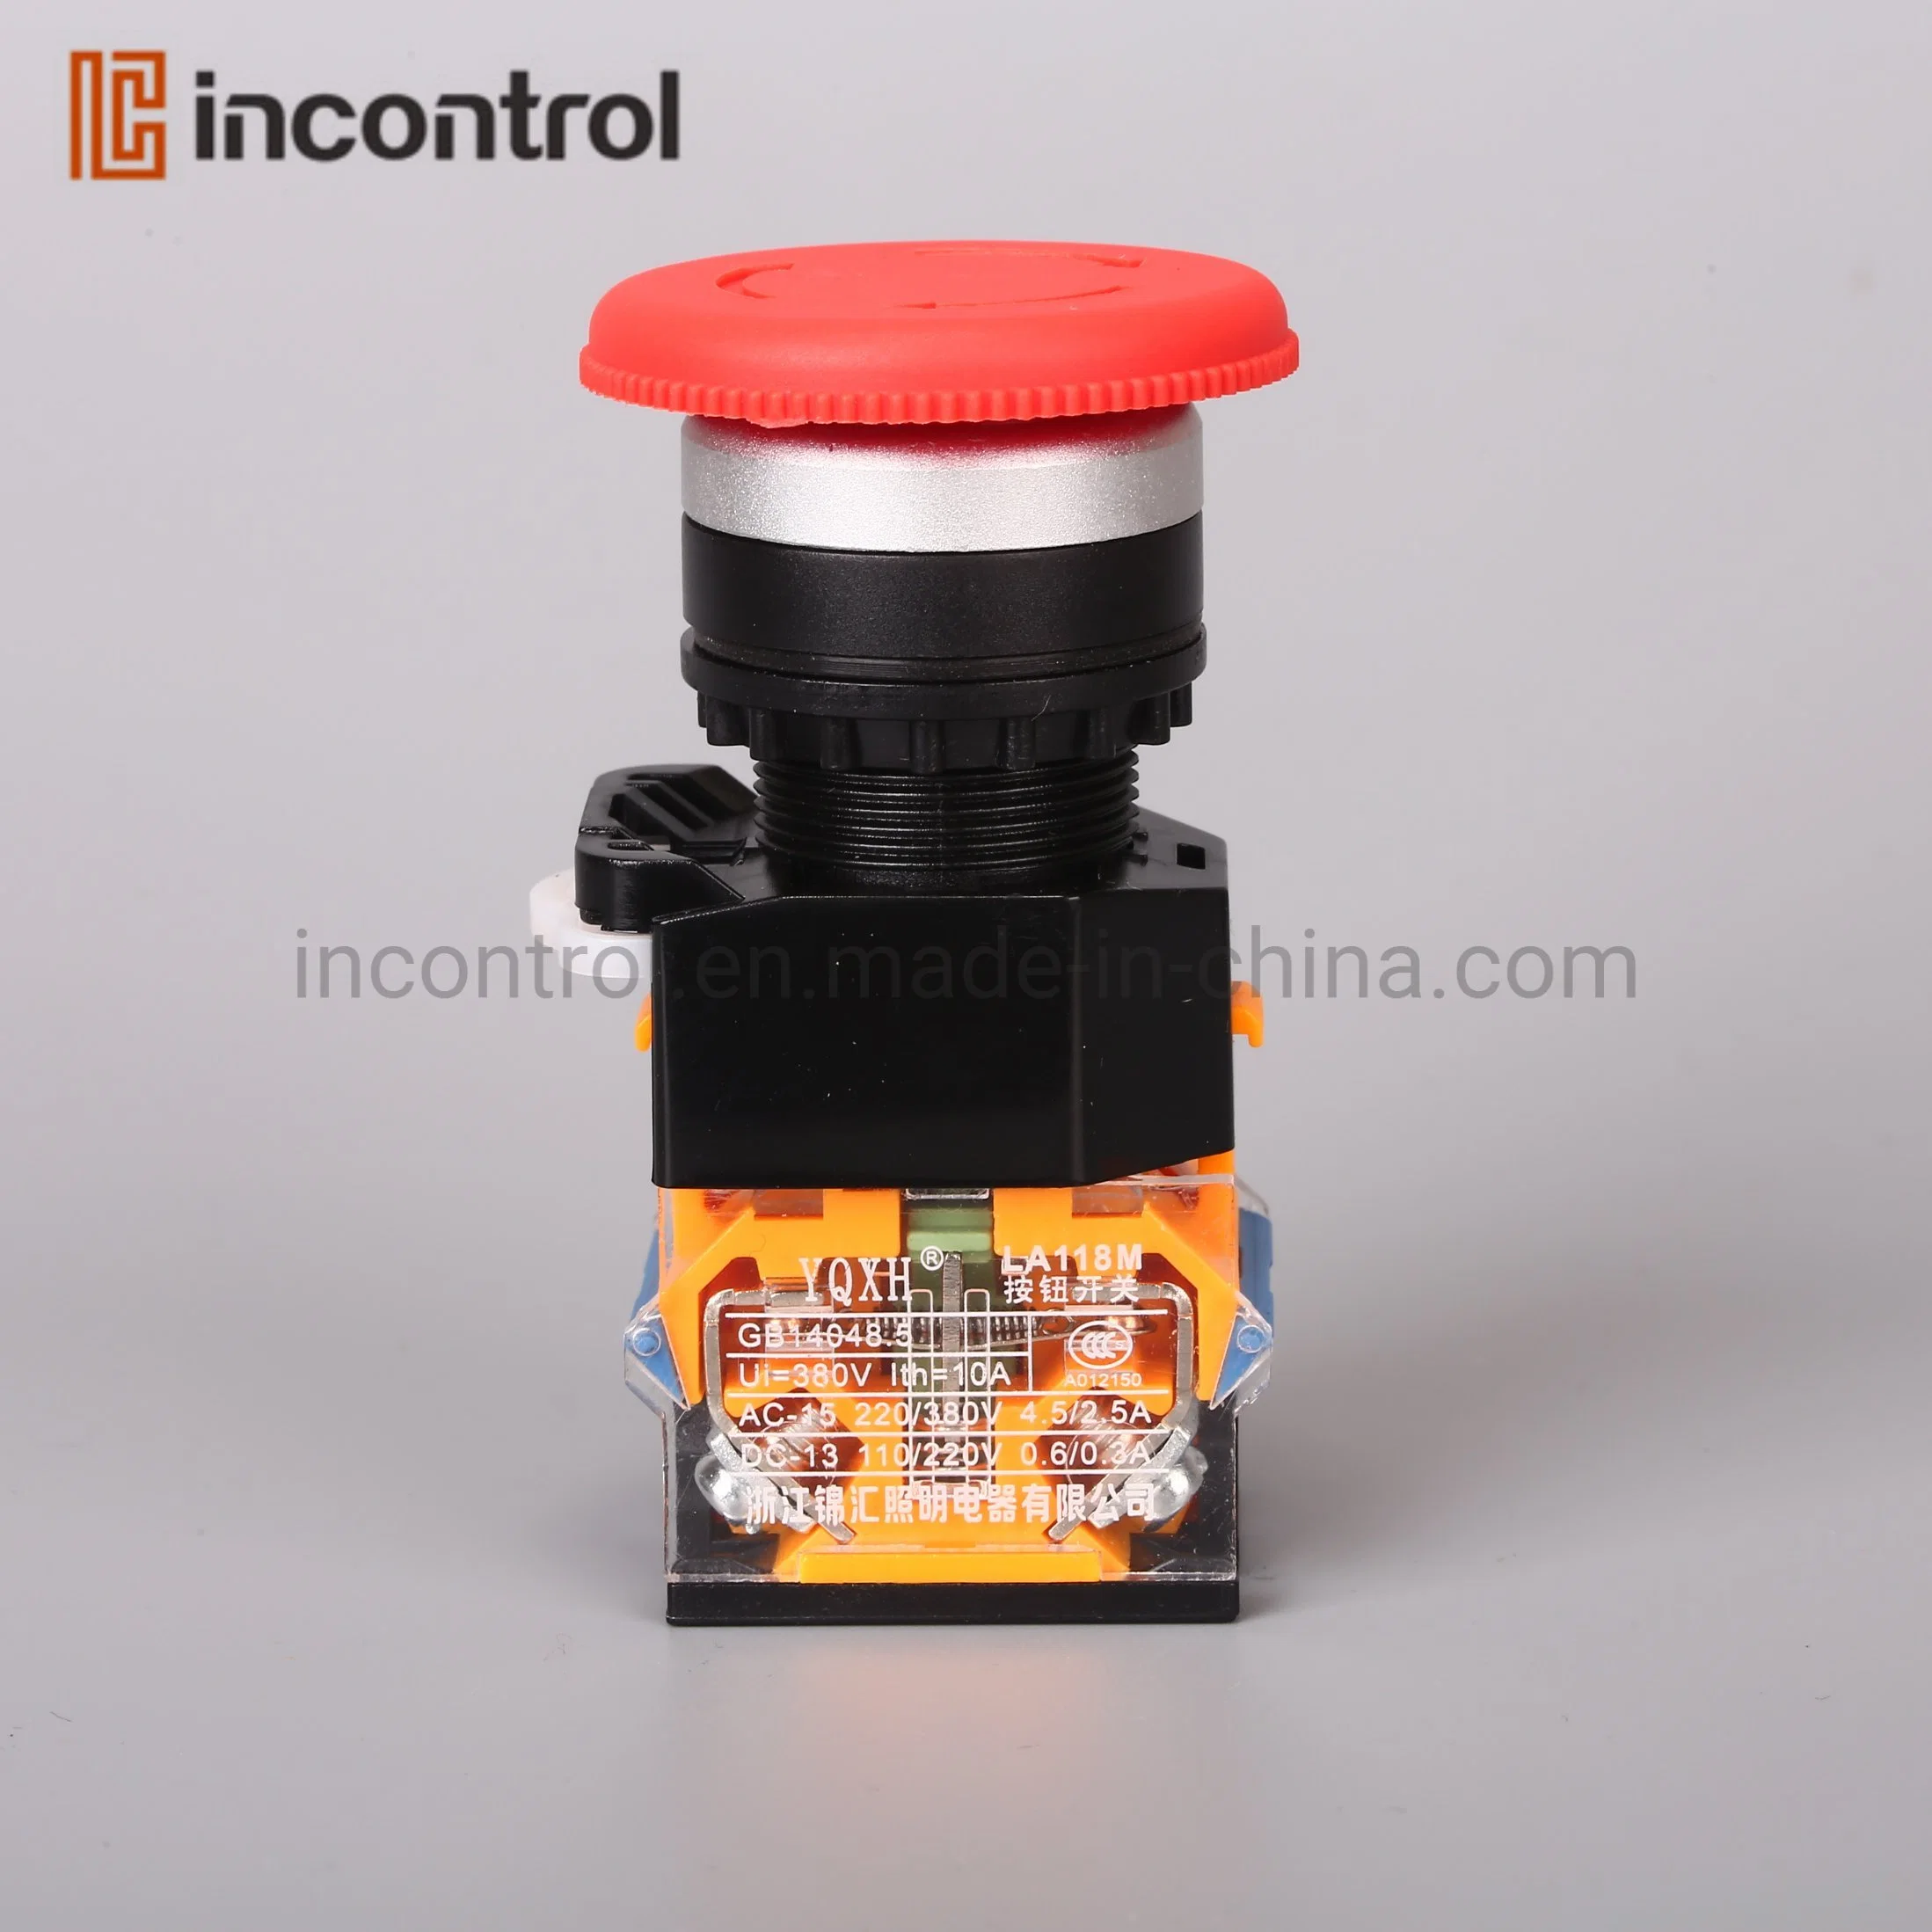 2NO 2NC de montaje en panel eléctrico Interruptor de botón autoblocante